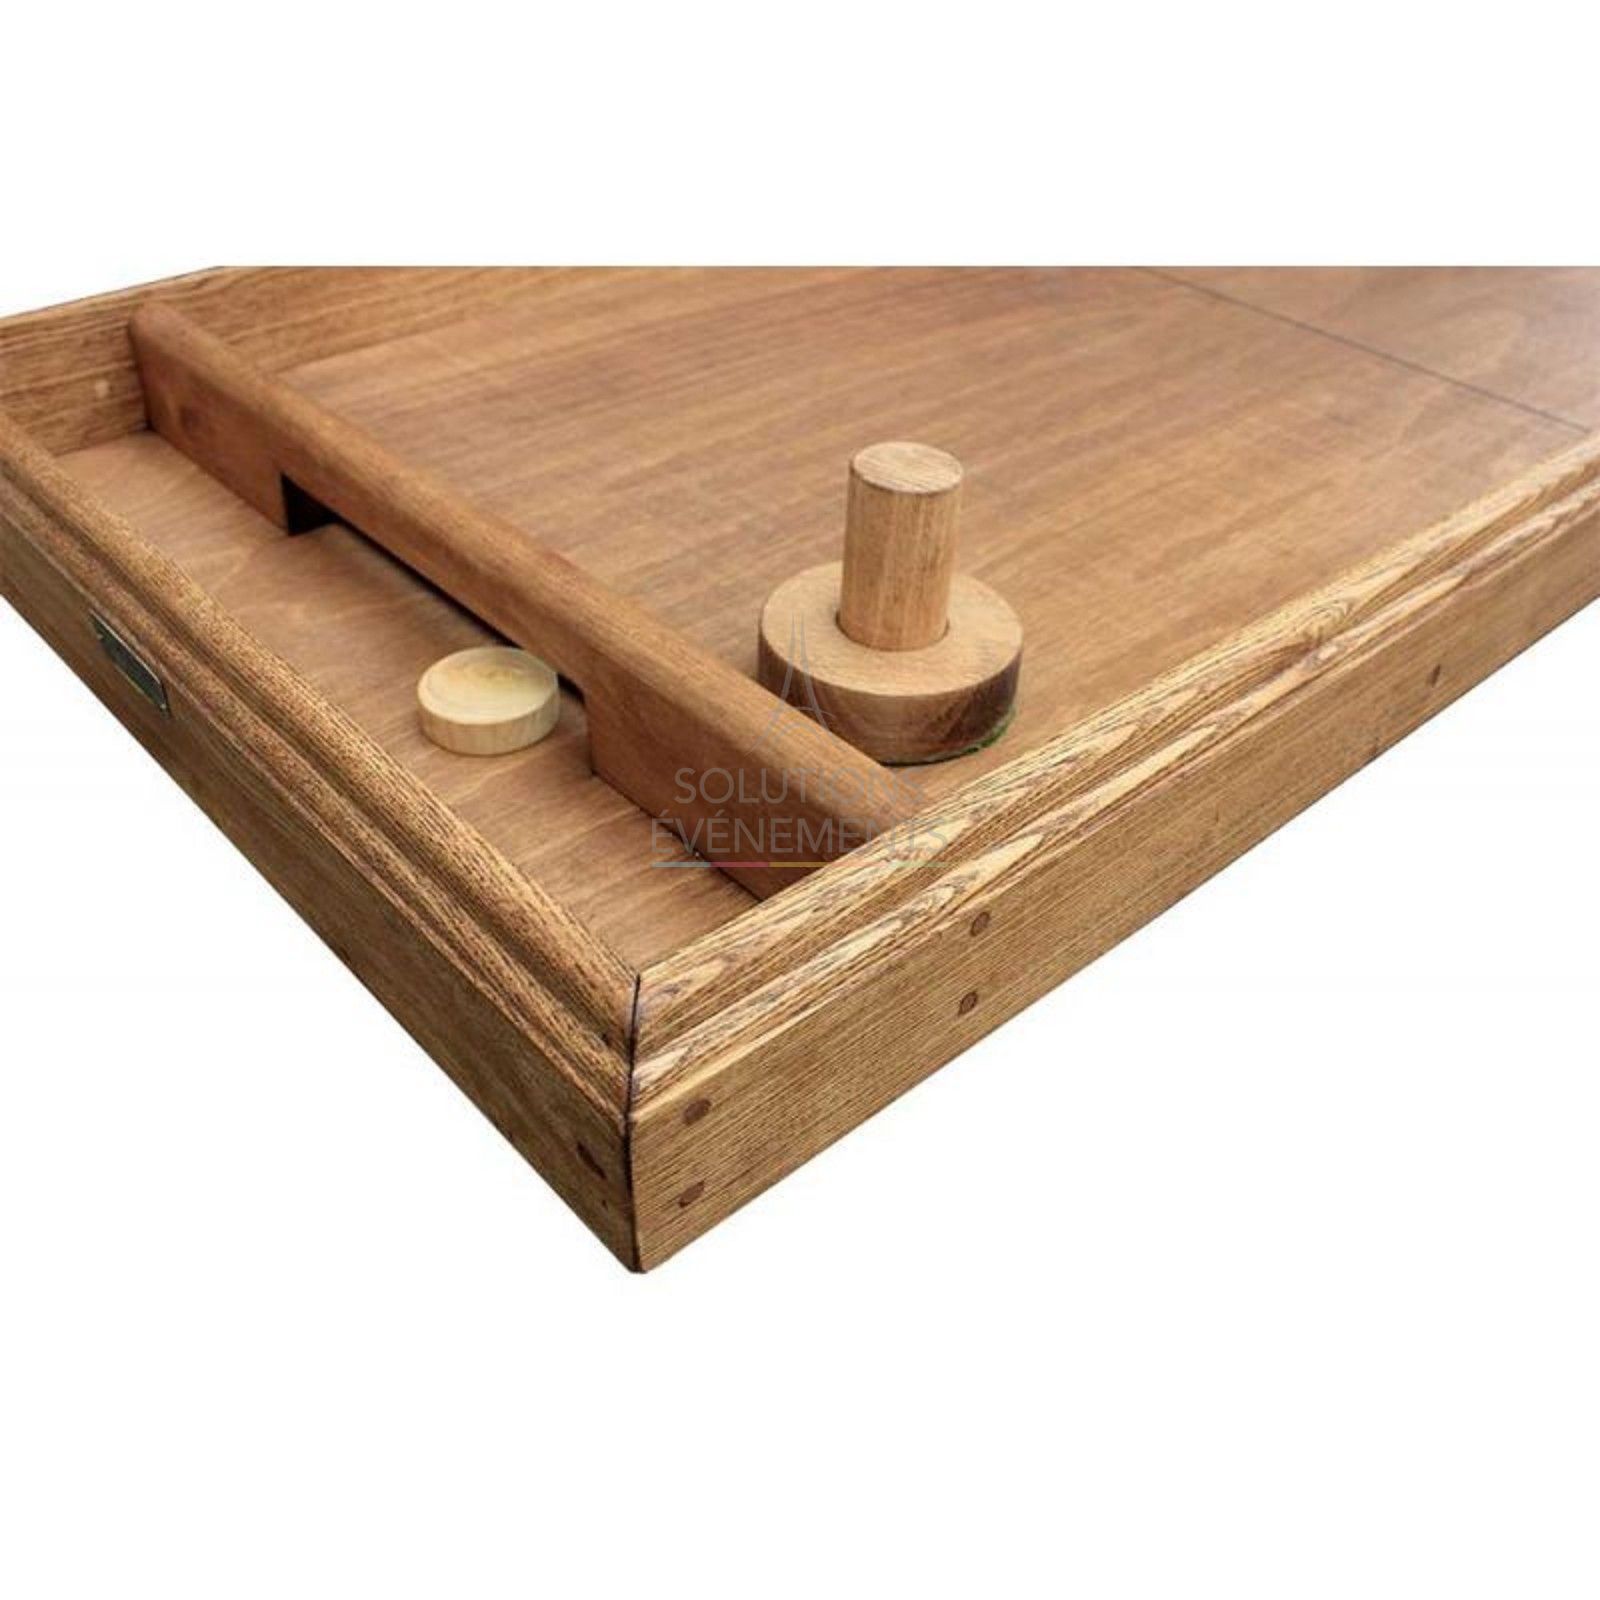 Location de jeu a glisser / table de hokey en bois